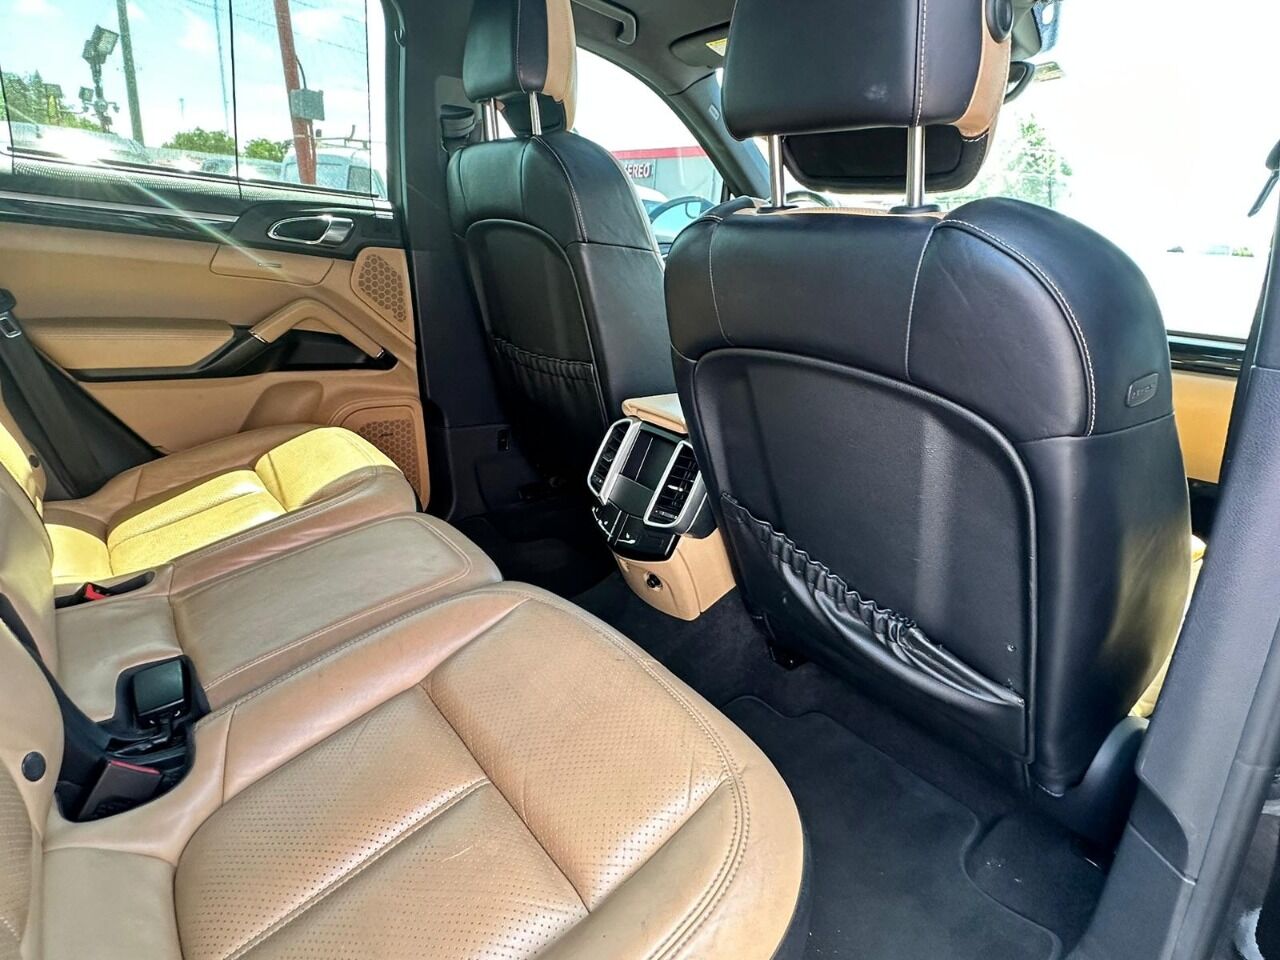 2015 PORSCHE Cayenne SUV / Crossover - $27,995